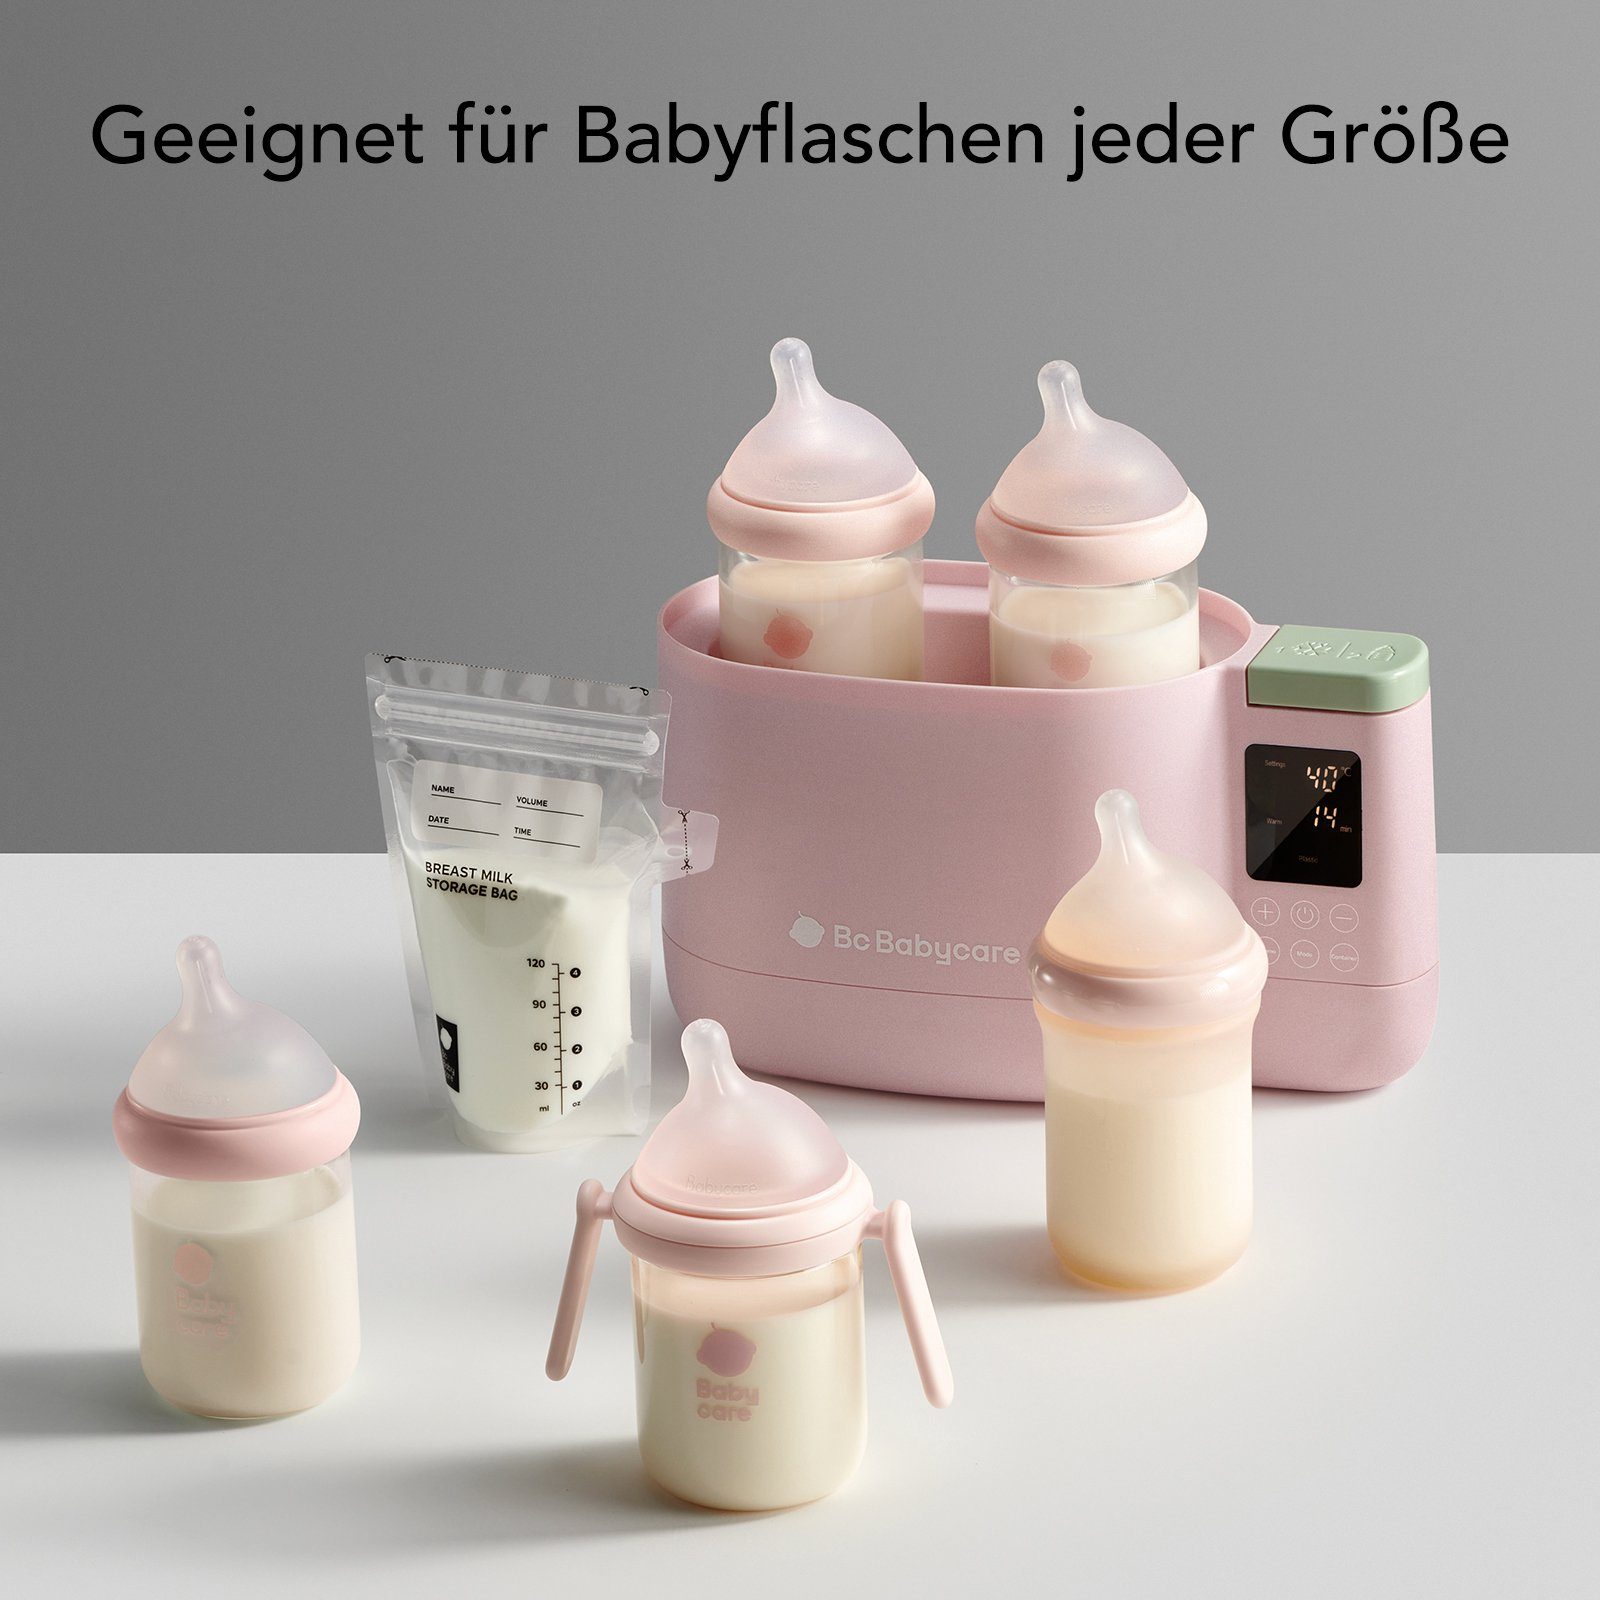 Gleichzeitige Babycare von Elektrischer 1, zwei Milcherwärmer, Erwärmung BC in Flaschen Babyflaschenwärmer 5